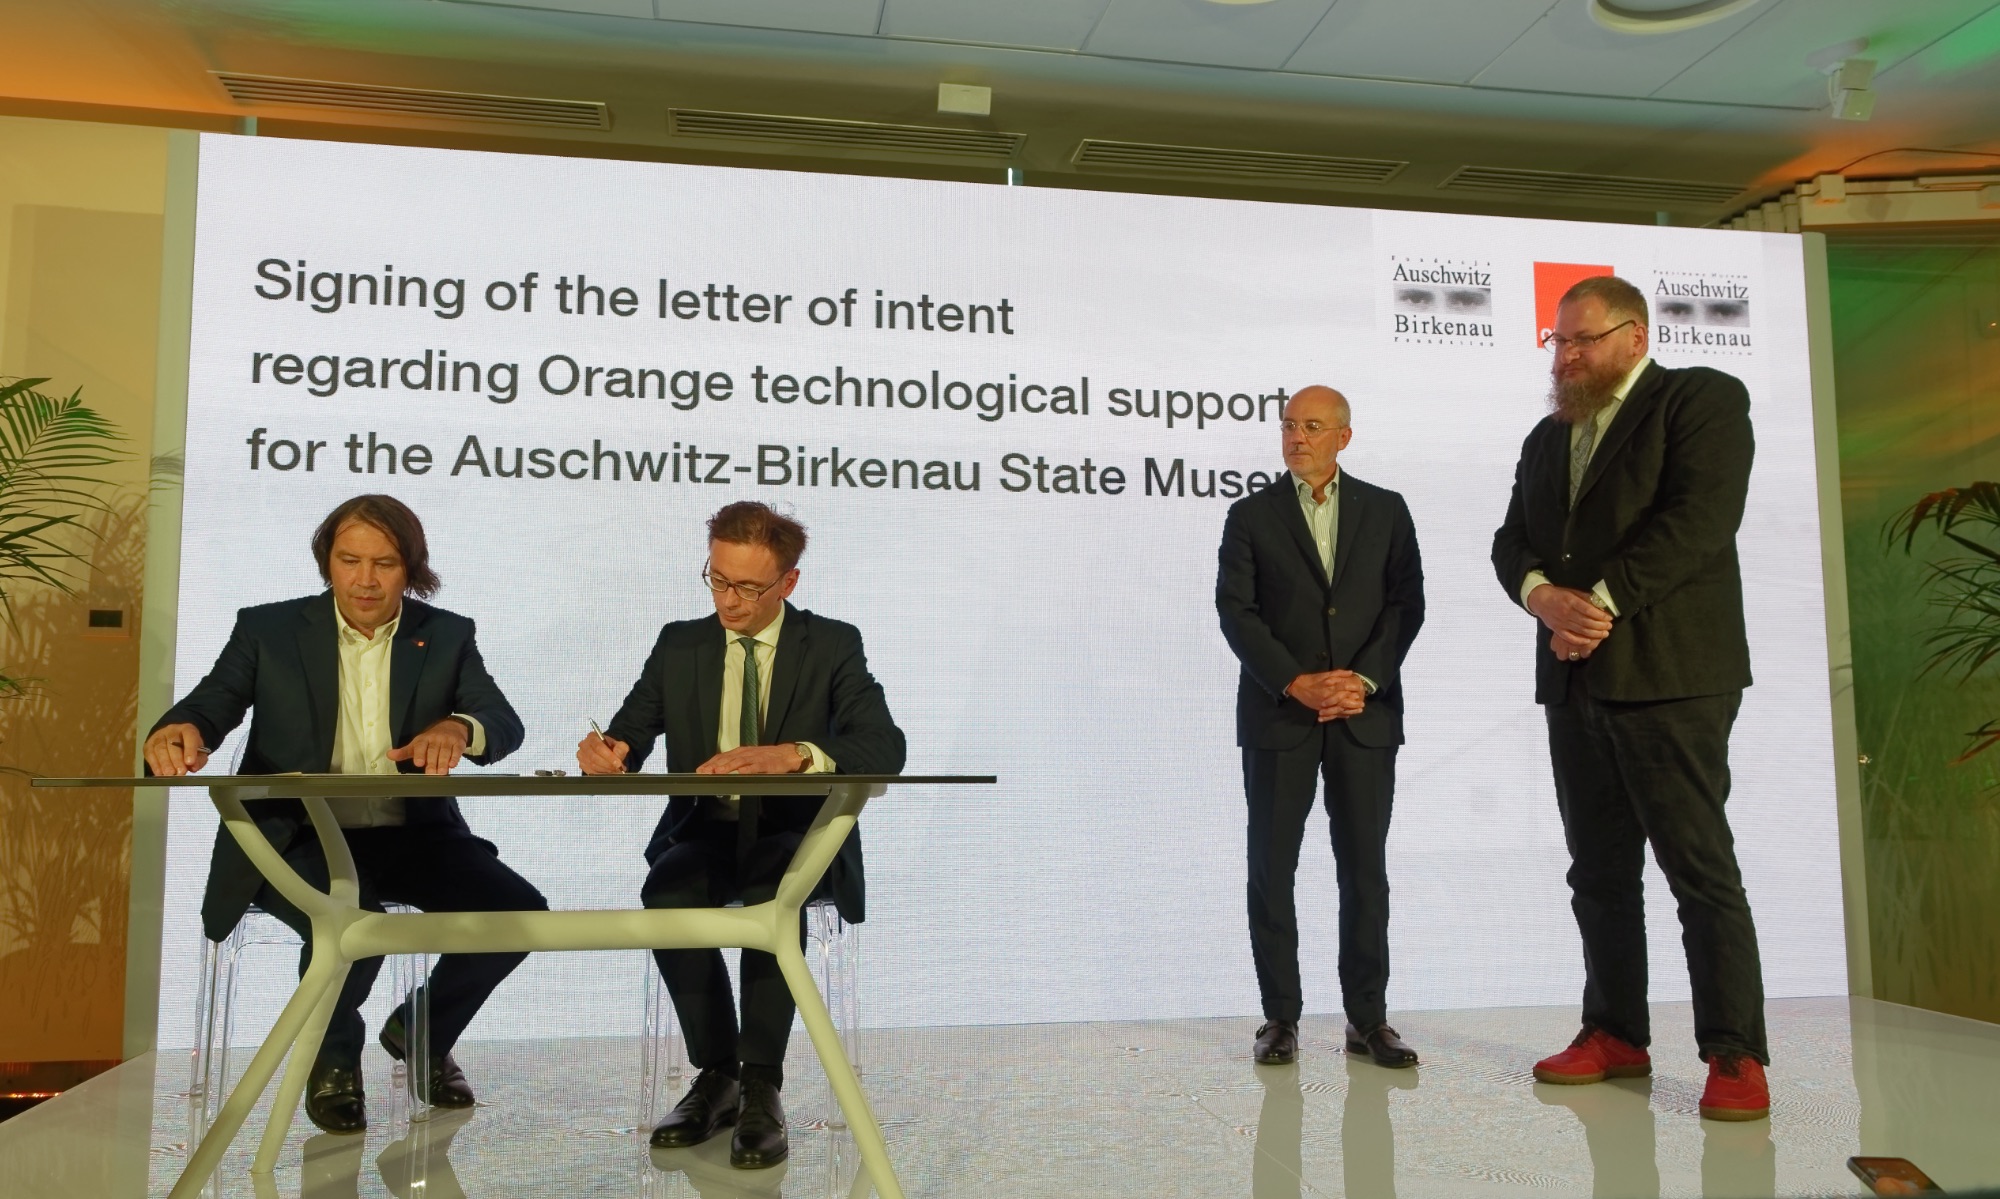 Podpisanie listu intencyjnego w sprawie wsparcia muzeum przez Orange